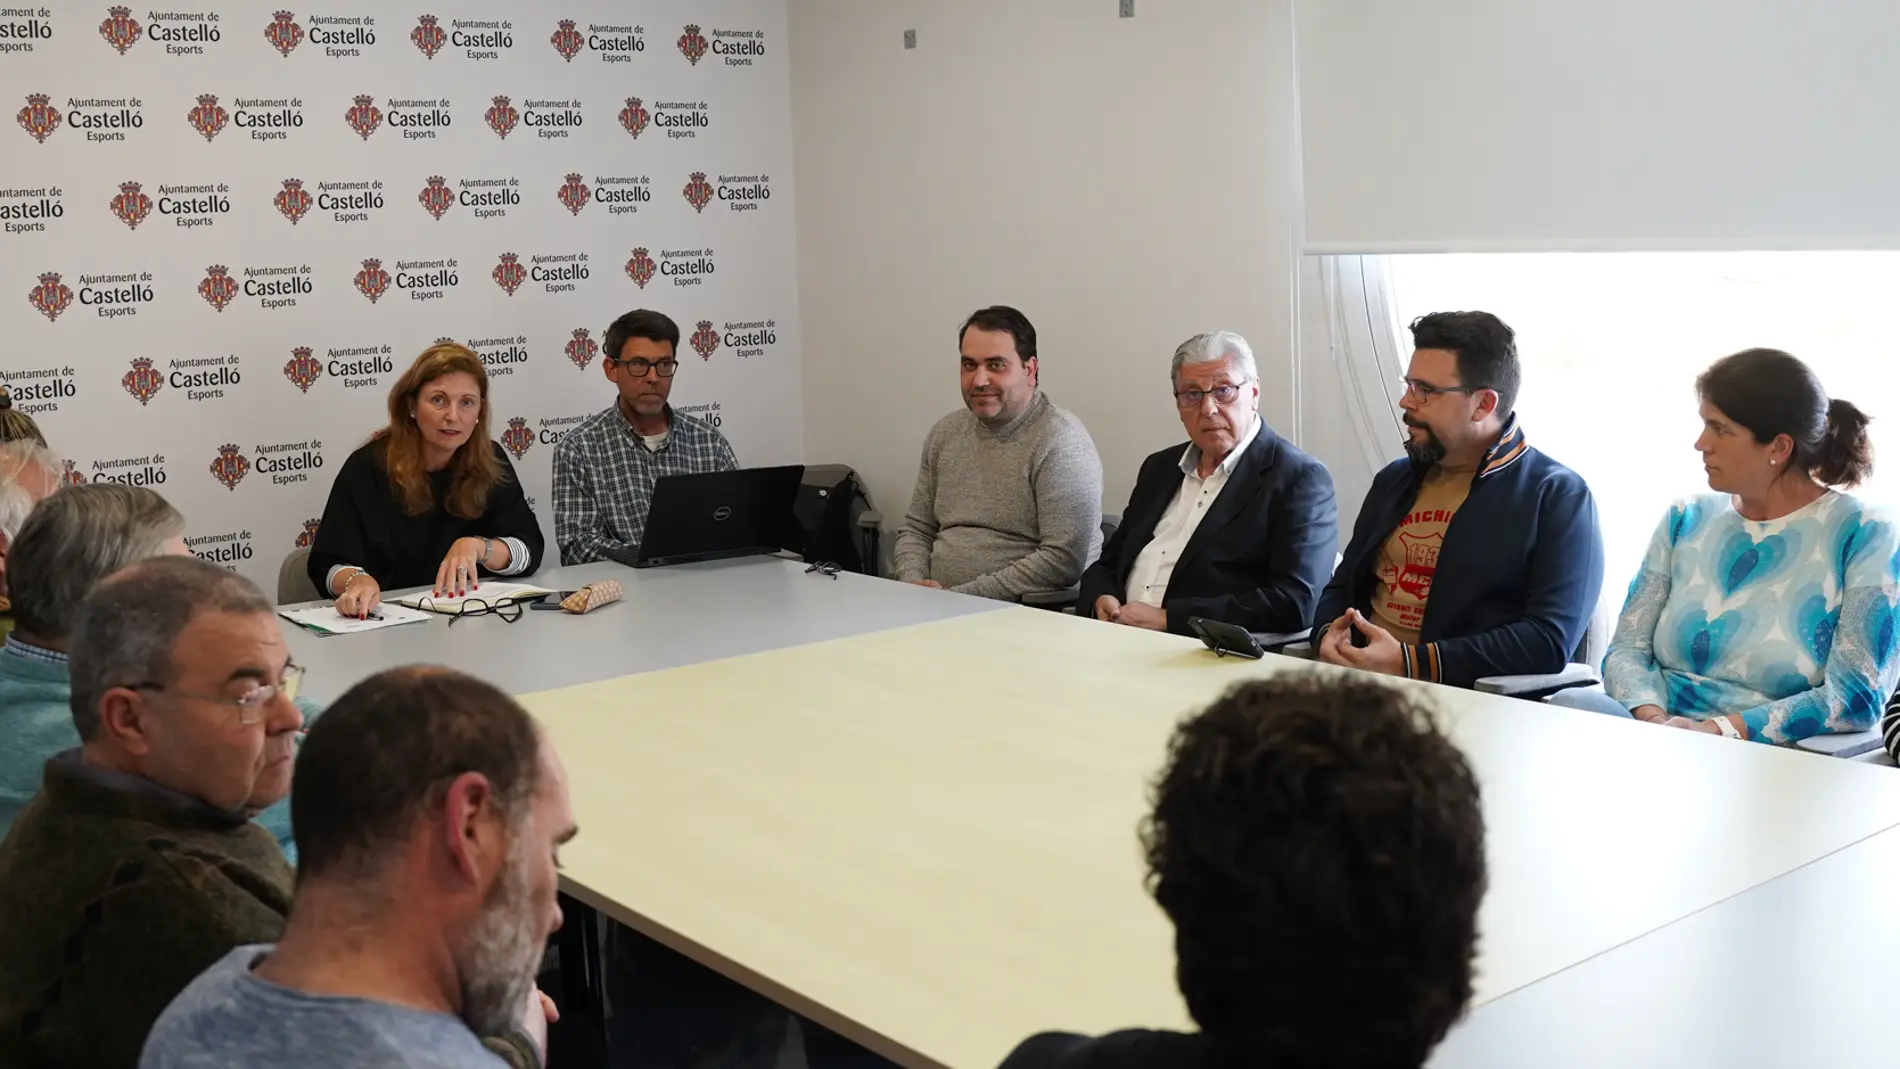 Marco se reúne con los clubs de Castelló para buscar soluciones ante el anuncio de la retirada de ayudas